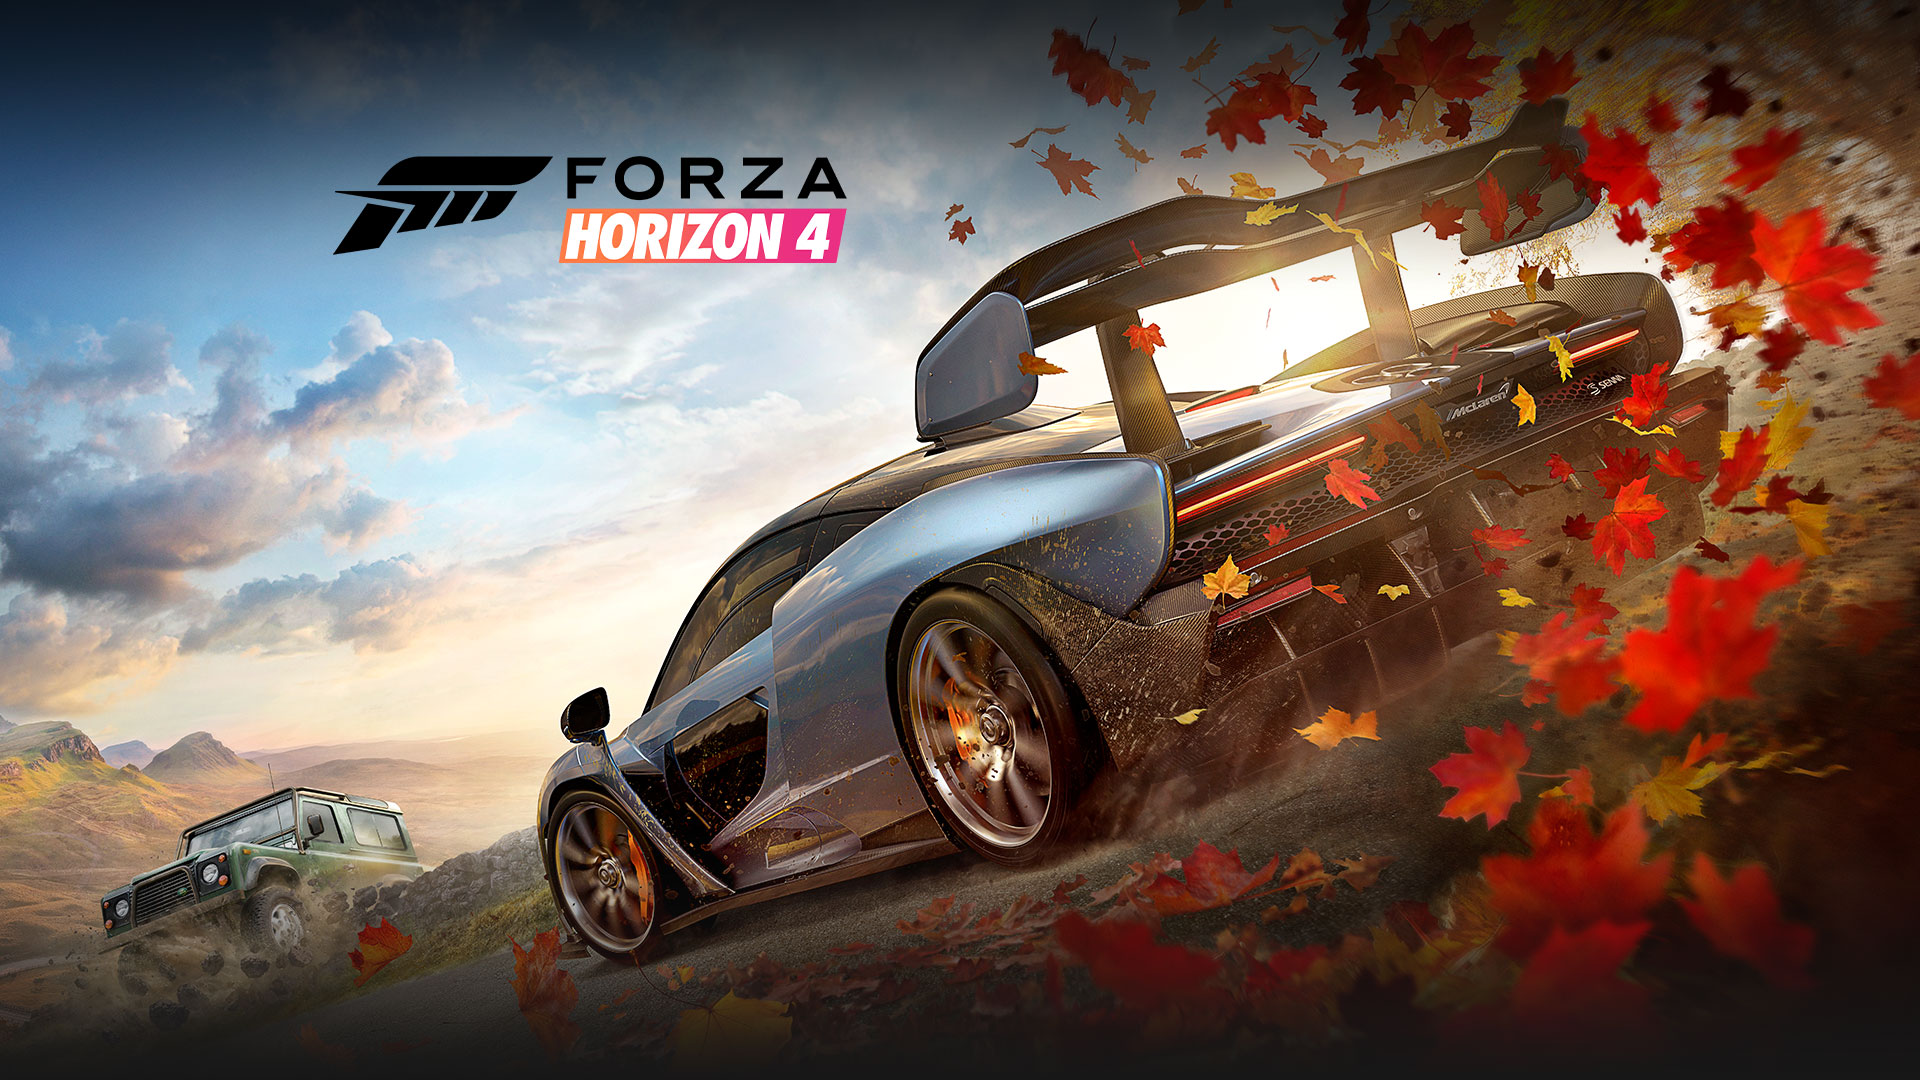 Forza Horizon 4: dos coches, uno de los cuales levanta hojas del suelo a su paso